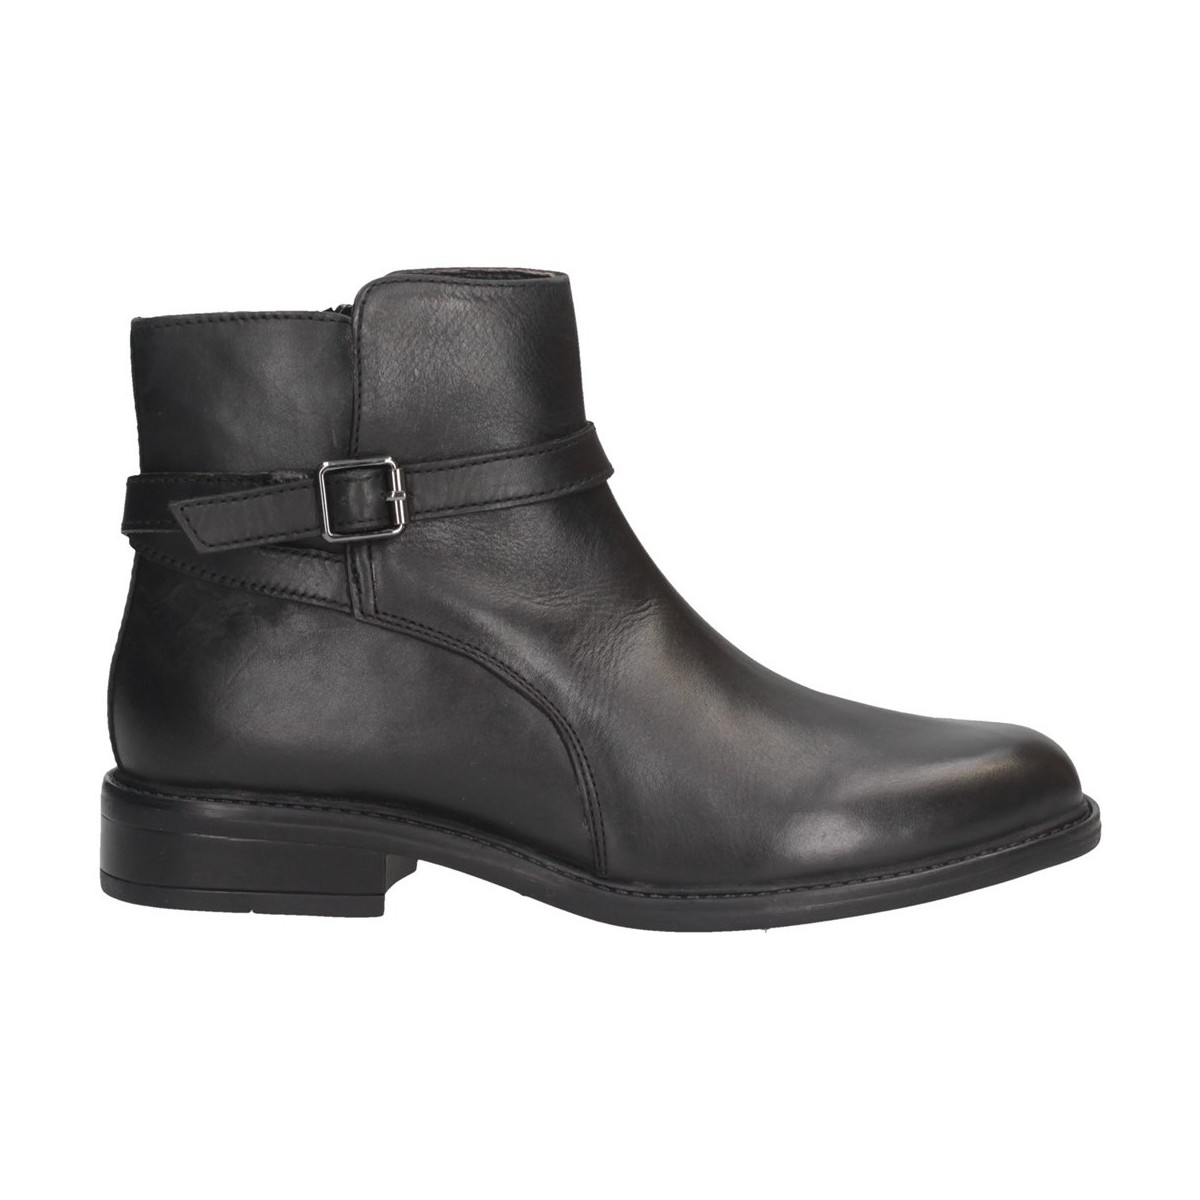 Chaussures Femme Girls Black Leather Boots 20151ETHAN Bottes et bottines Femme NOIR Noir